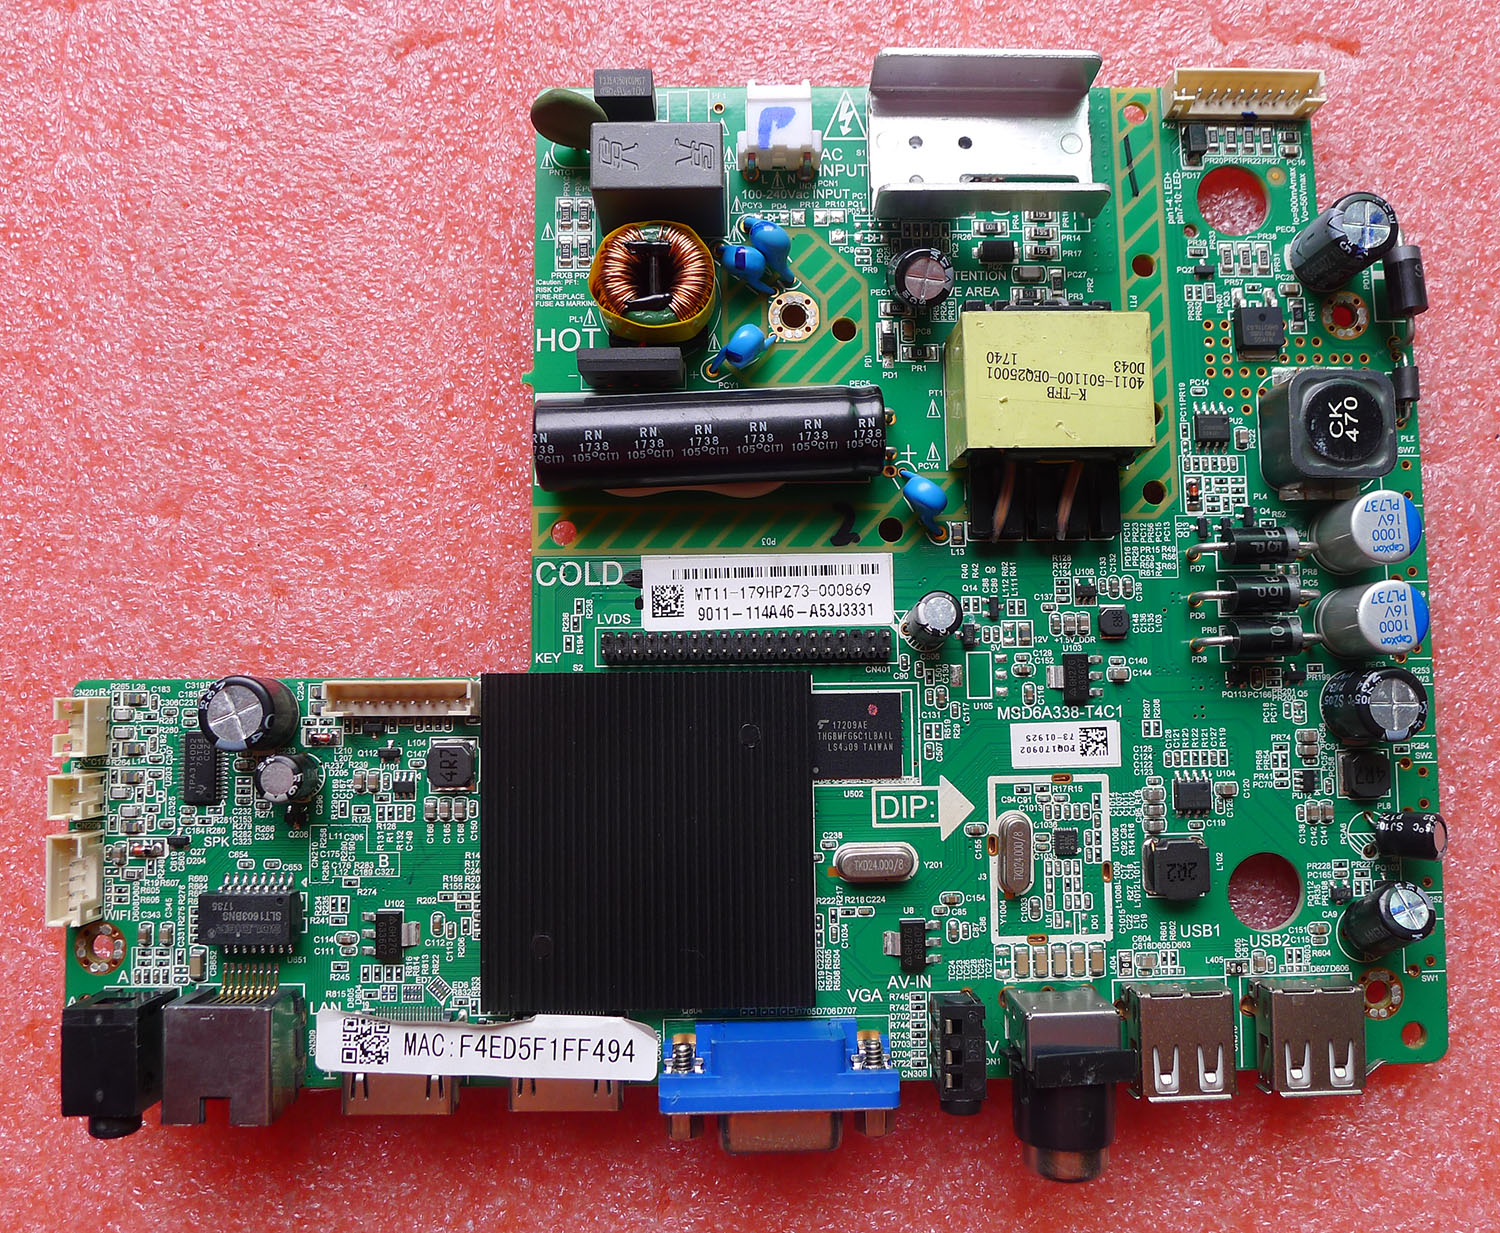 原装夏普2T-C32ACZA电视机主板 MSD6A338-T4C1配屏 K320WD9电路板